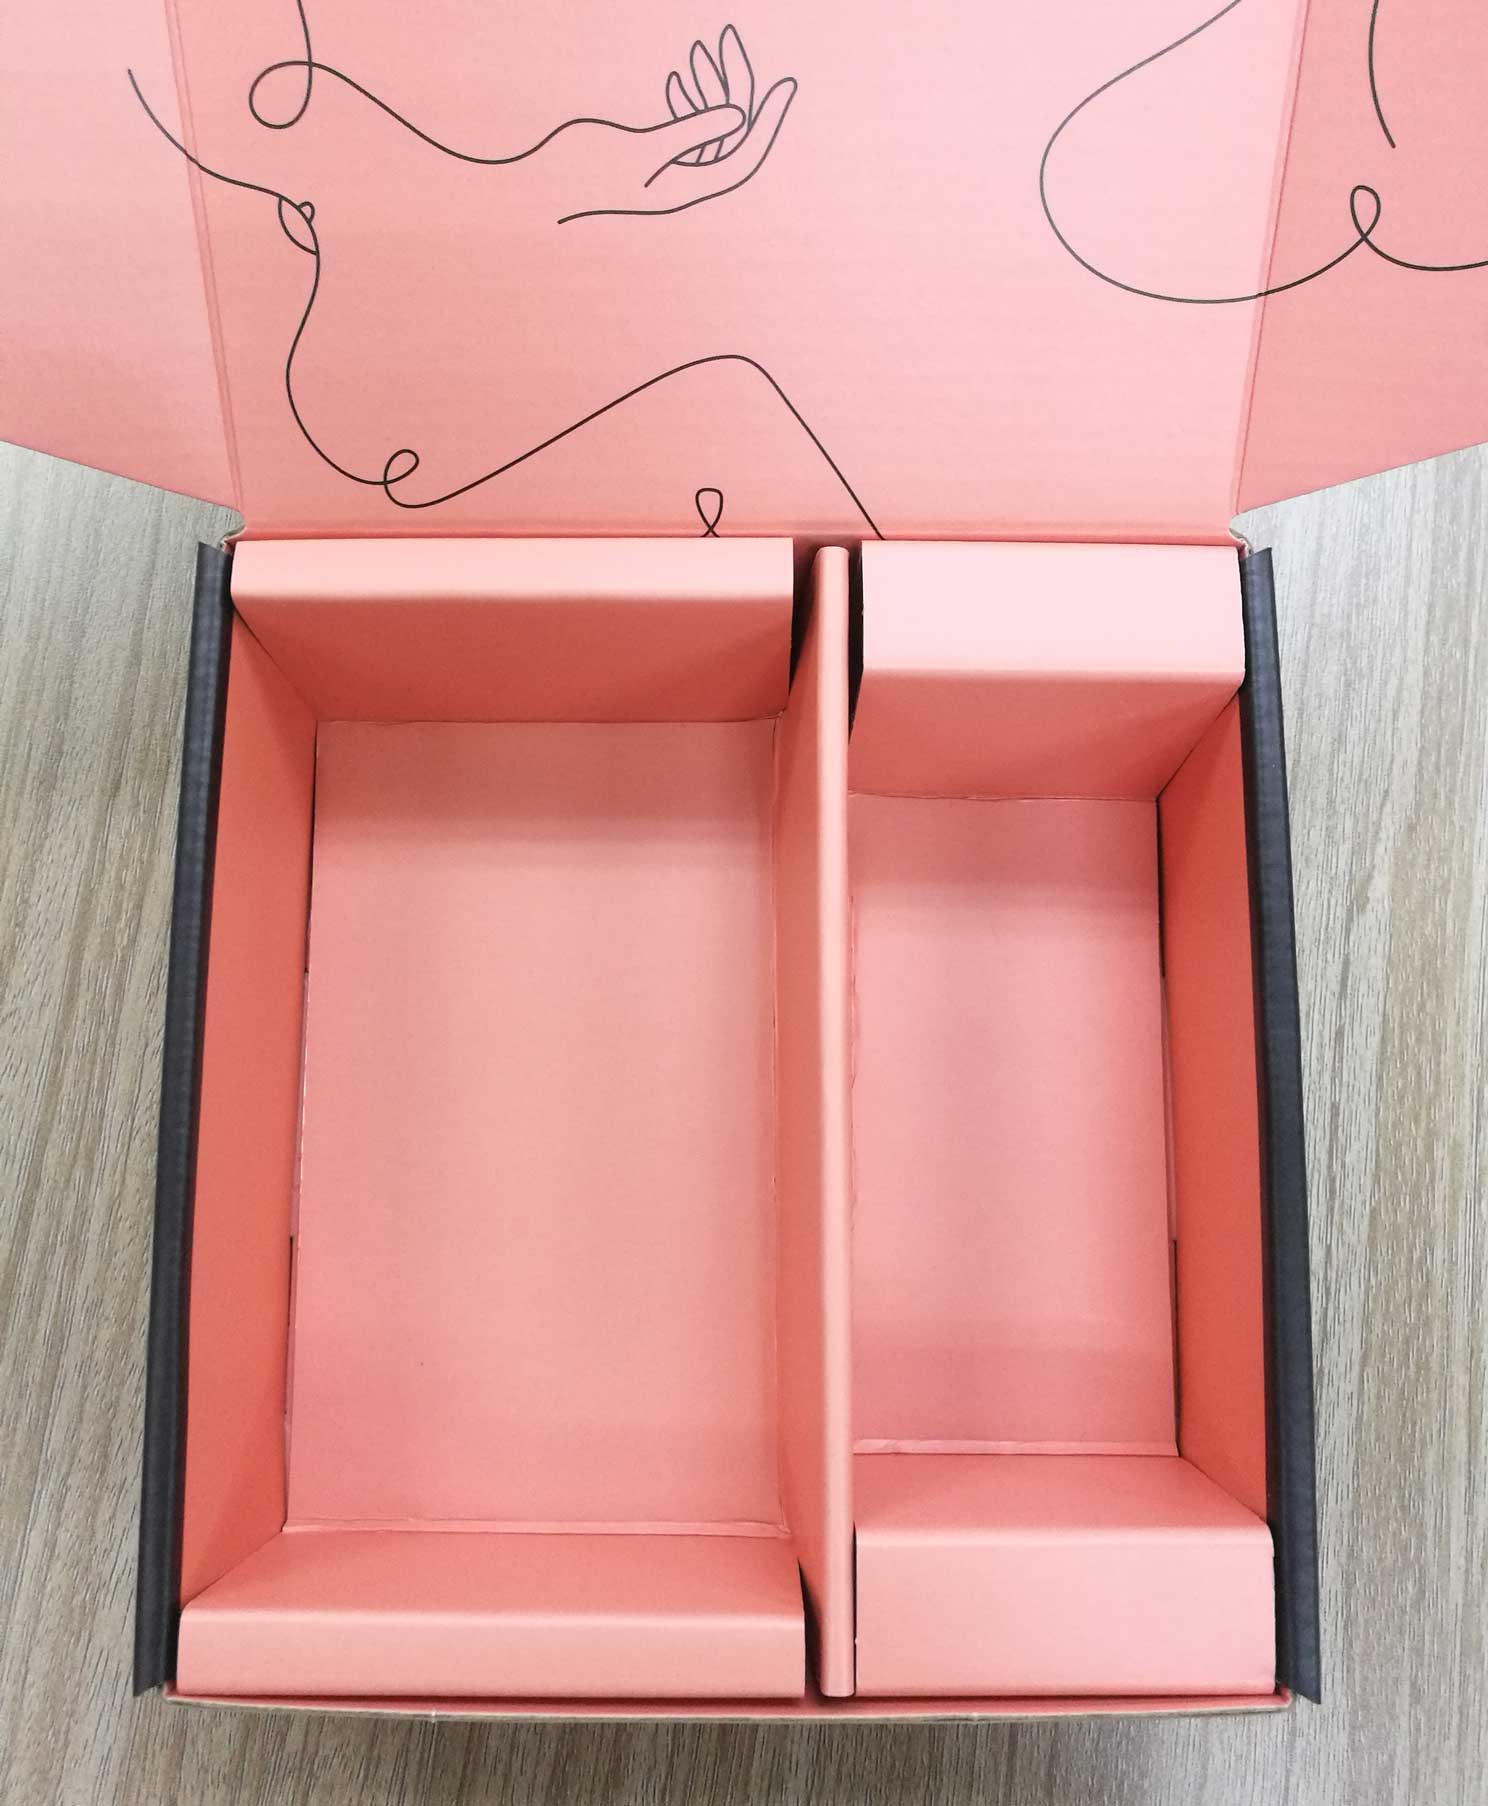 Custom Printed Box Dividers in a Mailer Box